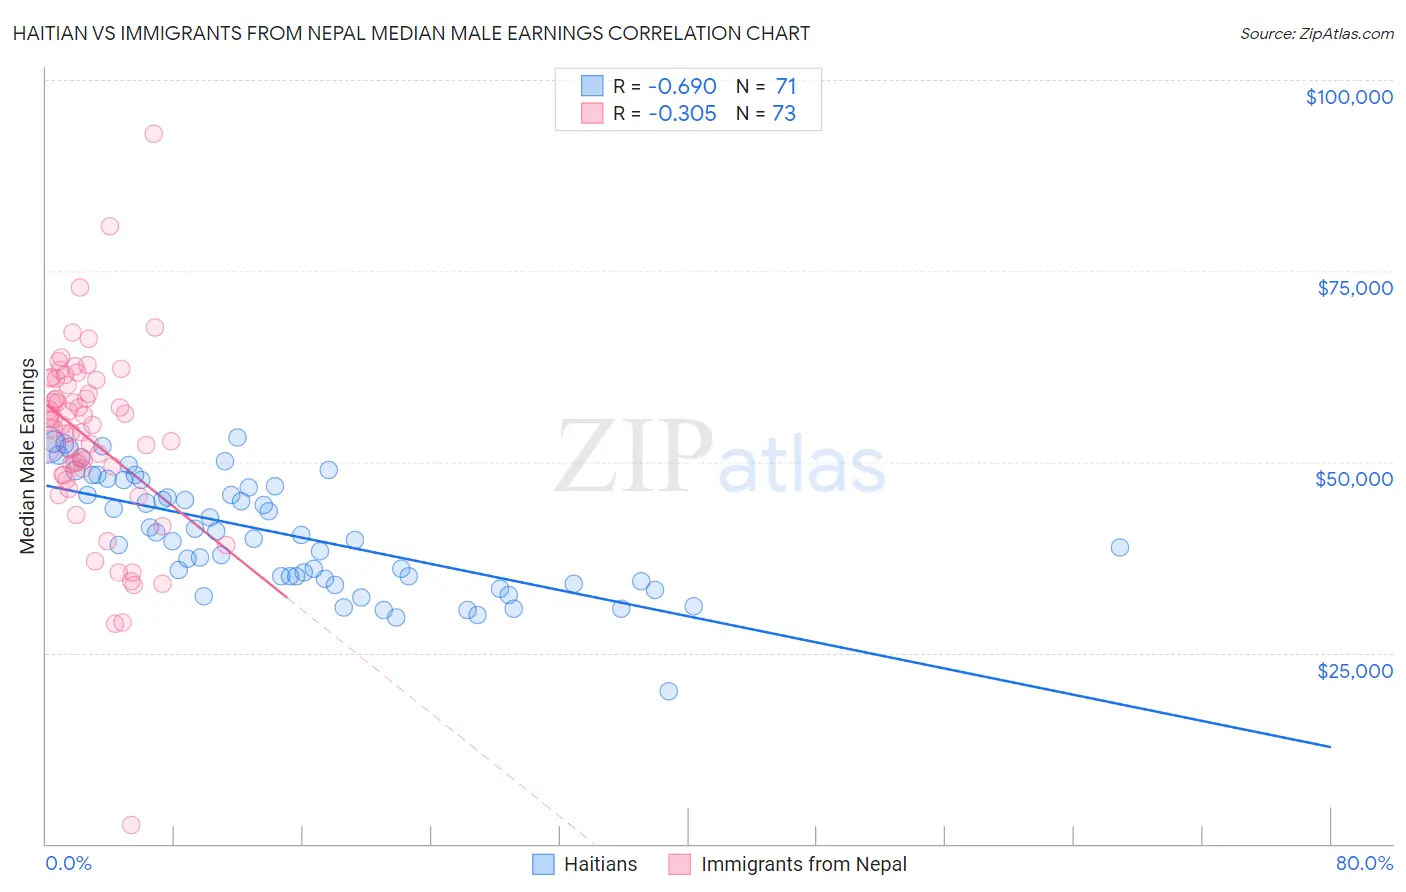 Haitian vs Immigrants from Nepal Median Male Earnings